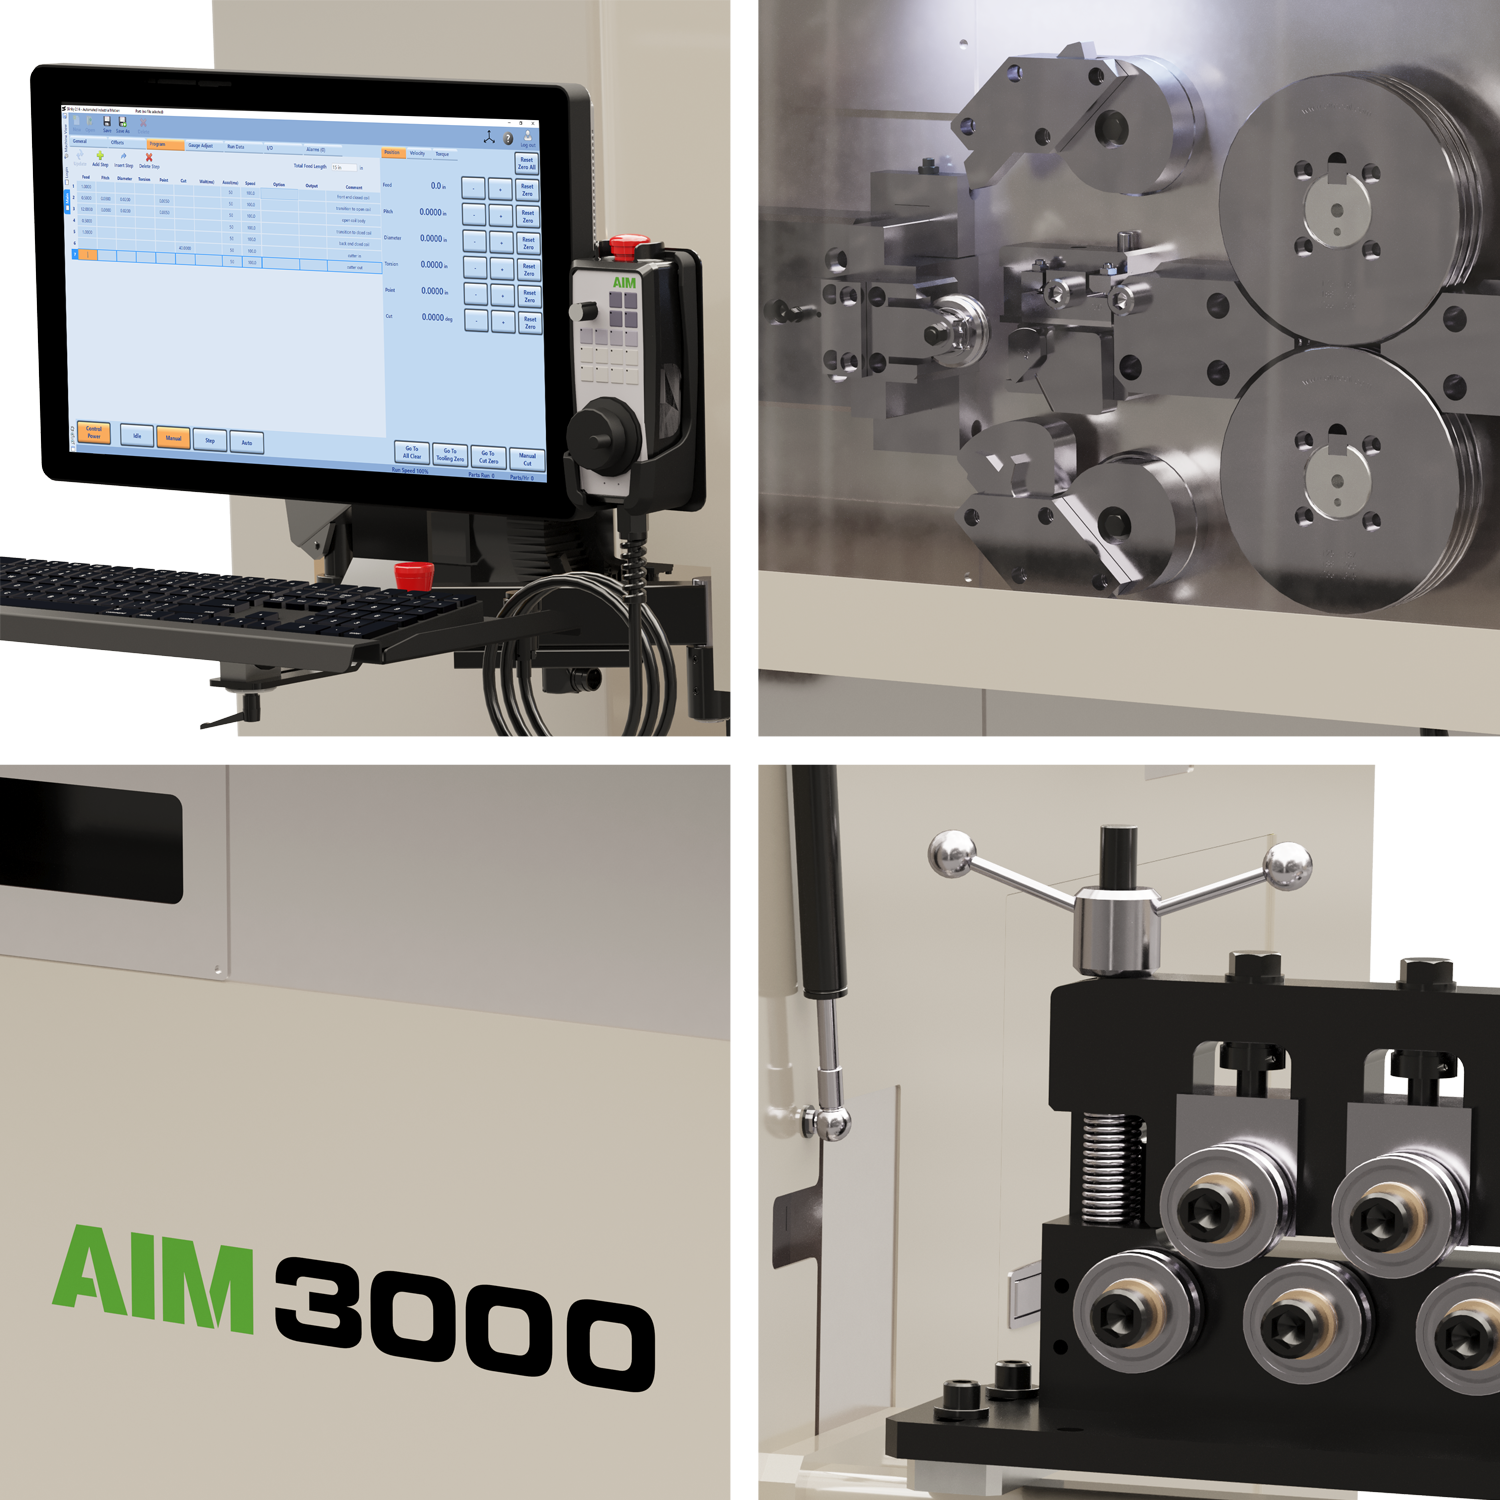 AIM 3000 CNC Spring Coiler Closeups